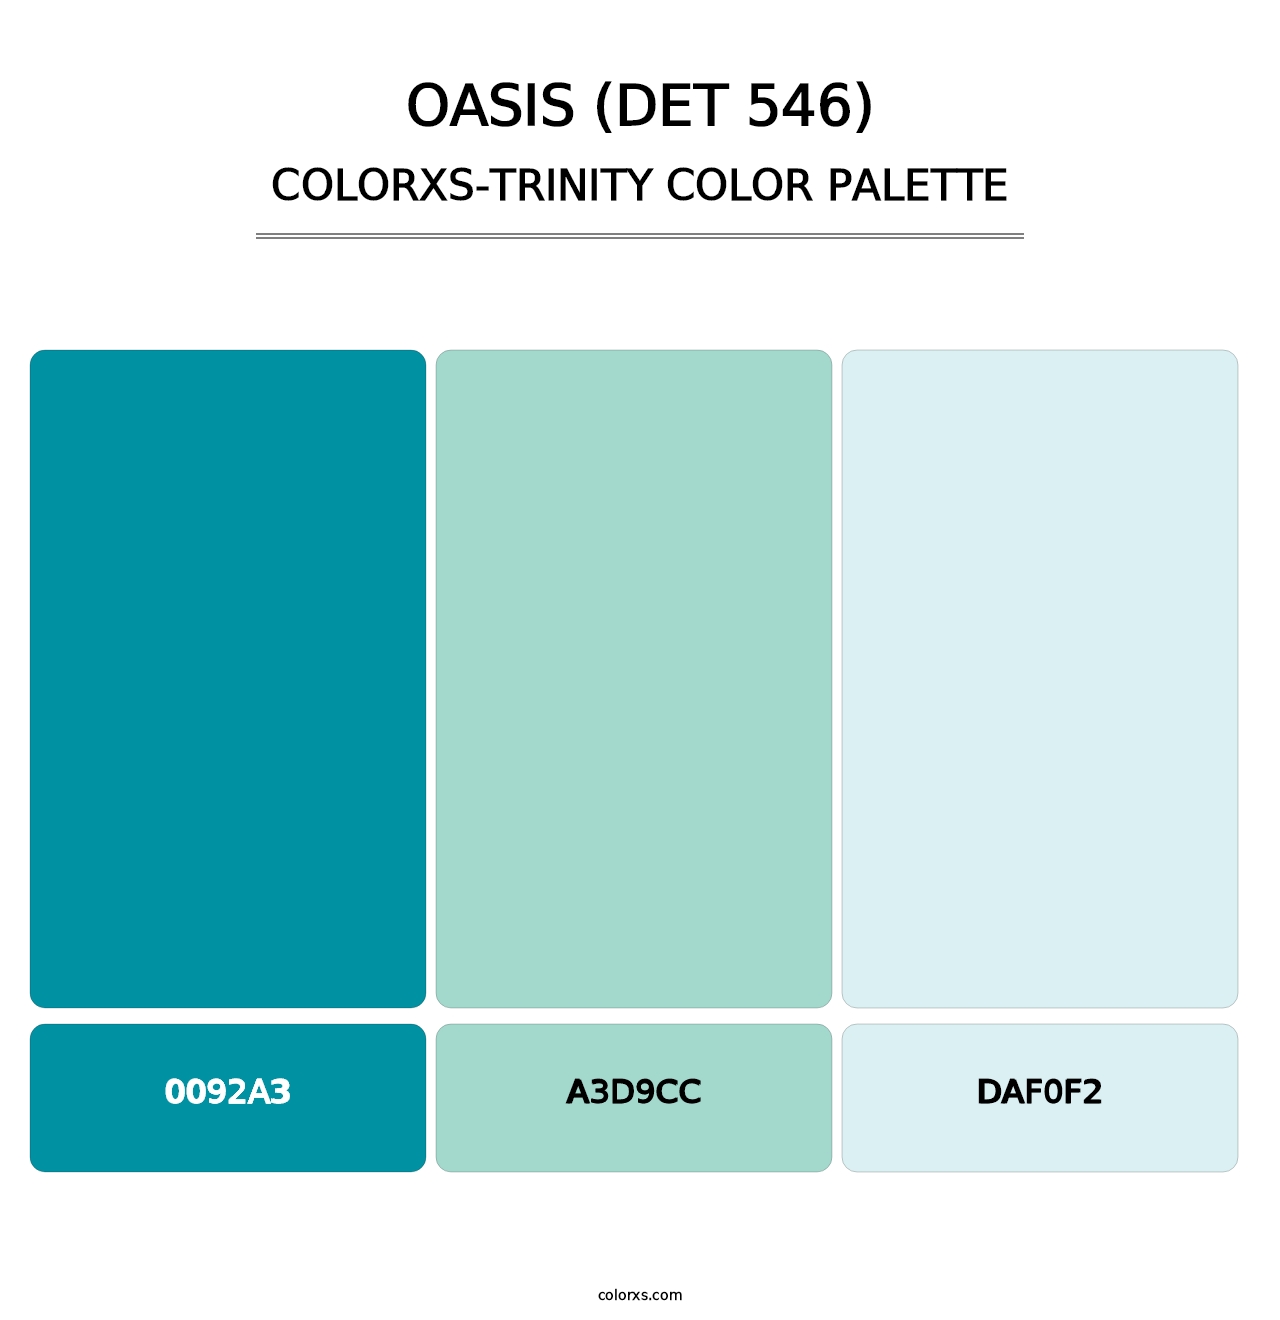 Oasis (DET 546) - Colorxs Trinity Palette